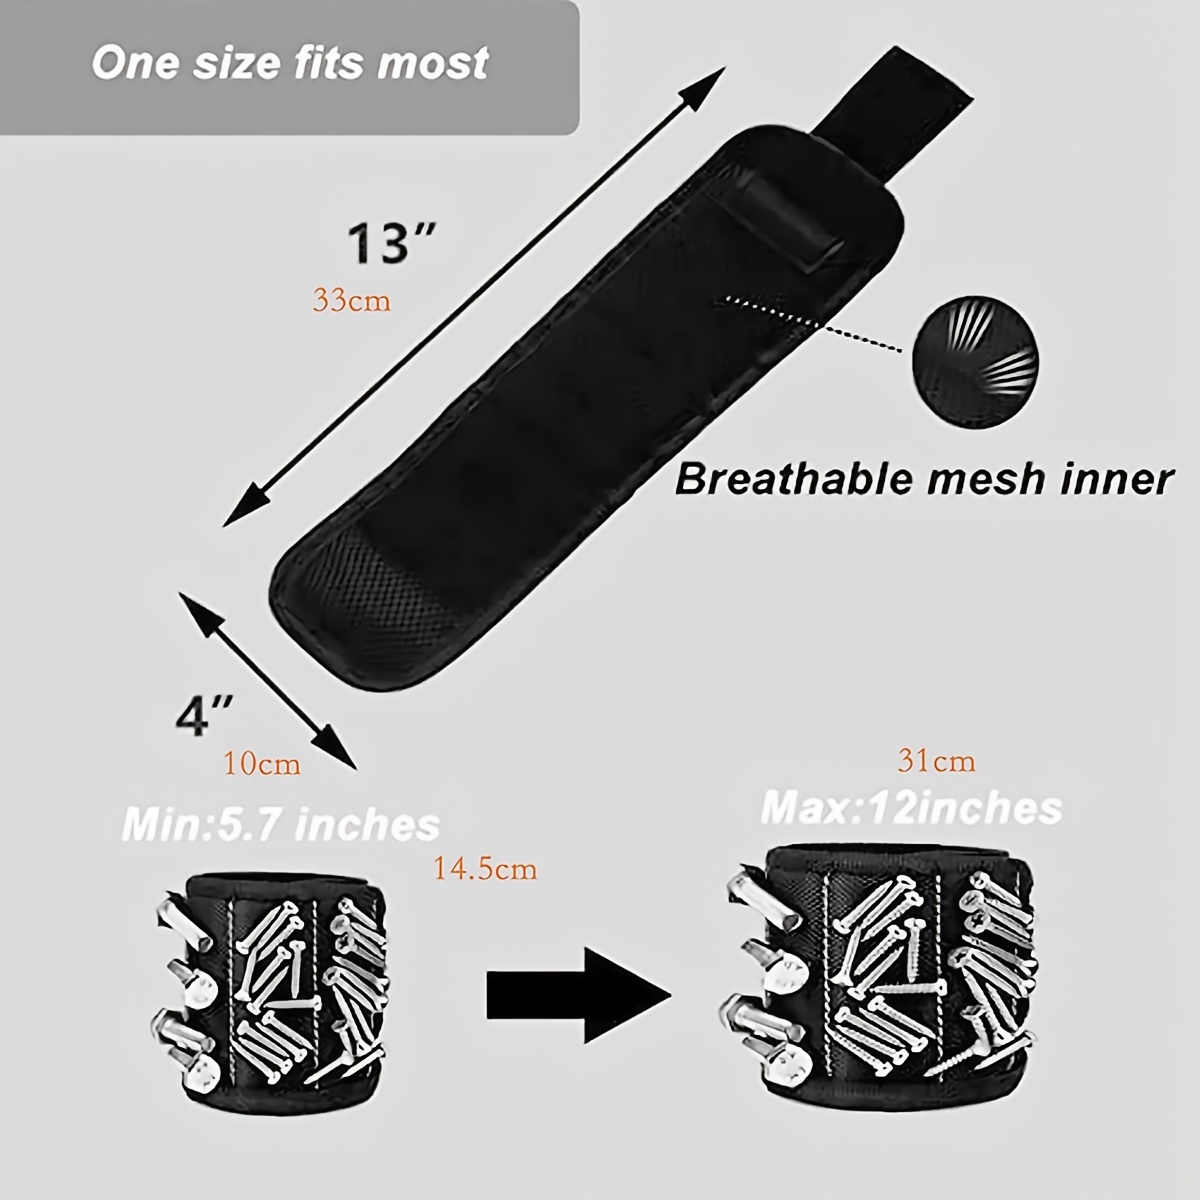 Bracelet magnétique avec Sac de Rangement, Outils de Bricolage Ceinture  Tenant des vis Gadgets pour Hommes Cadeaux, Bracelet magnétique avec 15